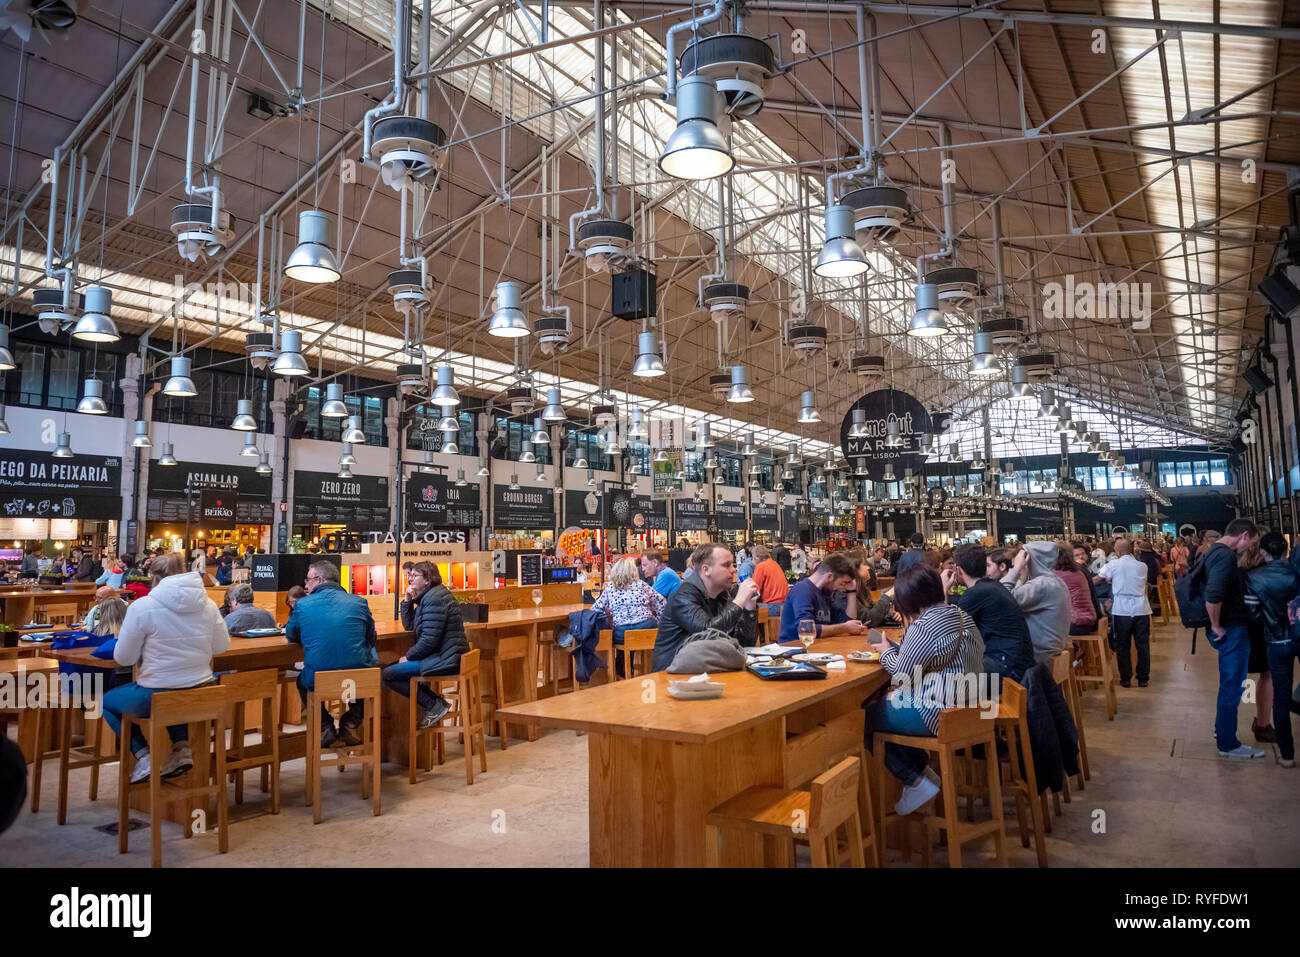 The Mercado da Ribeira food market in Lisbon, Portugal Stock Photo